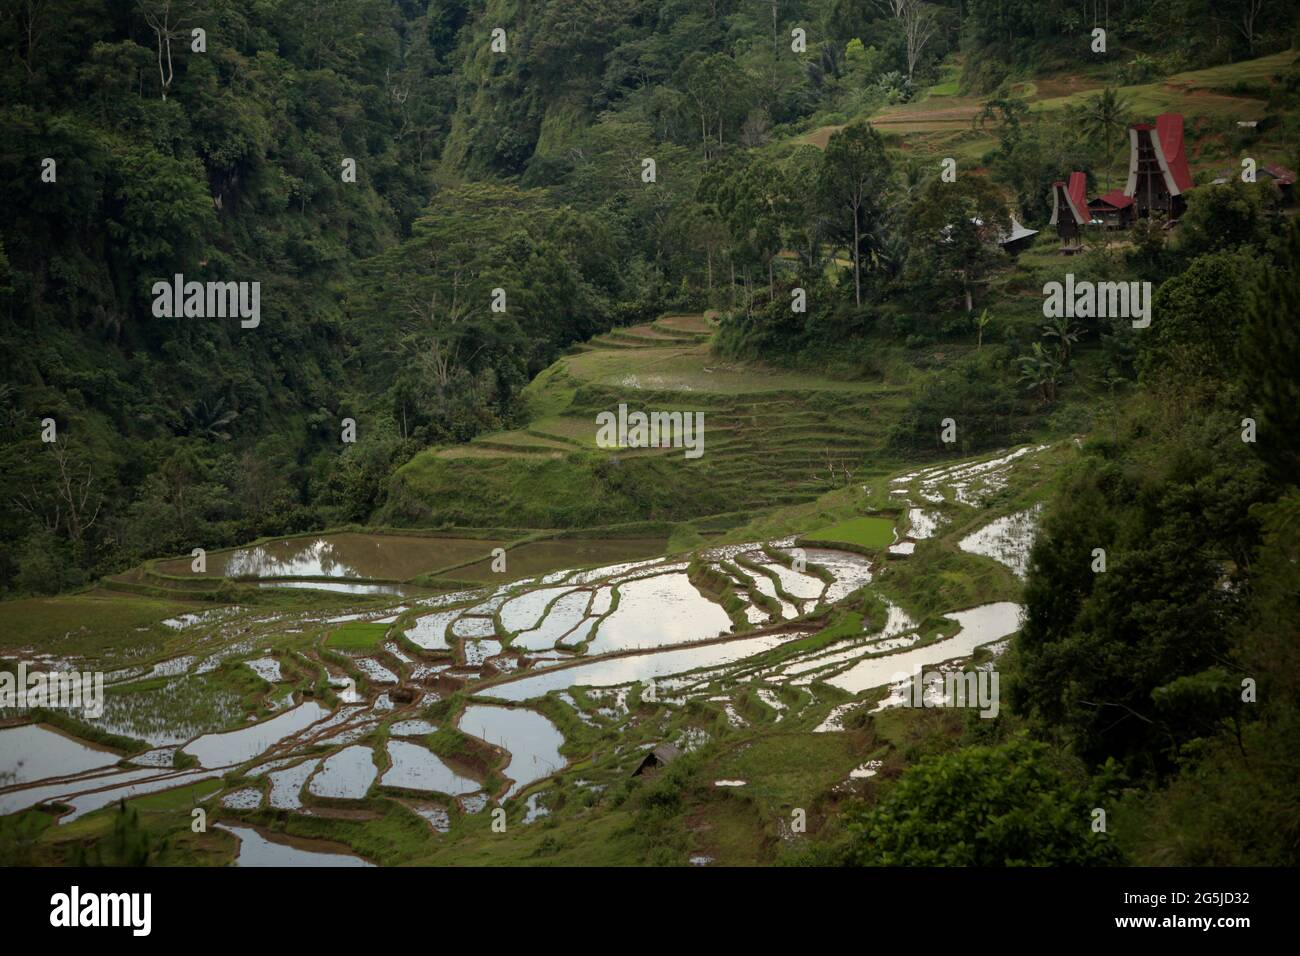 Terrazas de arroz en el pueblo de Piongan, Toraja Norte, Sulawesi Sur, Indonesia. Se proyecta que las temperaturas más altas causadas por el calentamiento global reducirán los rendimientos de los cultivos de arroz en Indonesia. Los cambios en los patrones de El Nino, que afectan el inicio y la duración de la estación húmeda, también están enviando la producción agrícola a un estado vulnerable. El desarrollo de variedades de arroz locales nuevas o mejoradas que sean más resistentes (que se hacen eco de estudios recientes en otros países) podría ser una de las claves para mitigar. Foto de stock